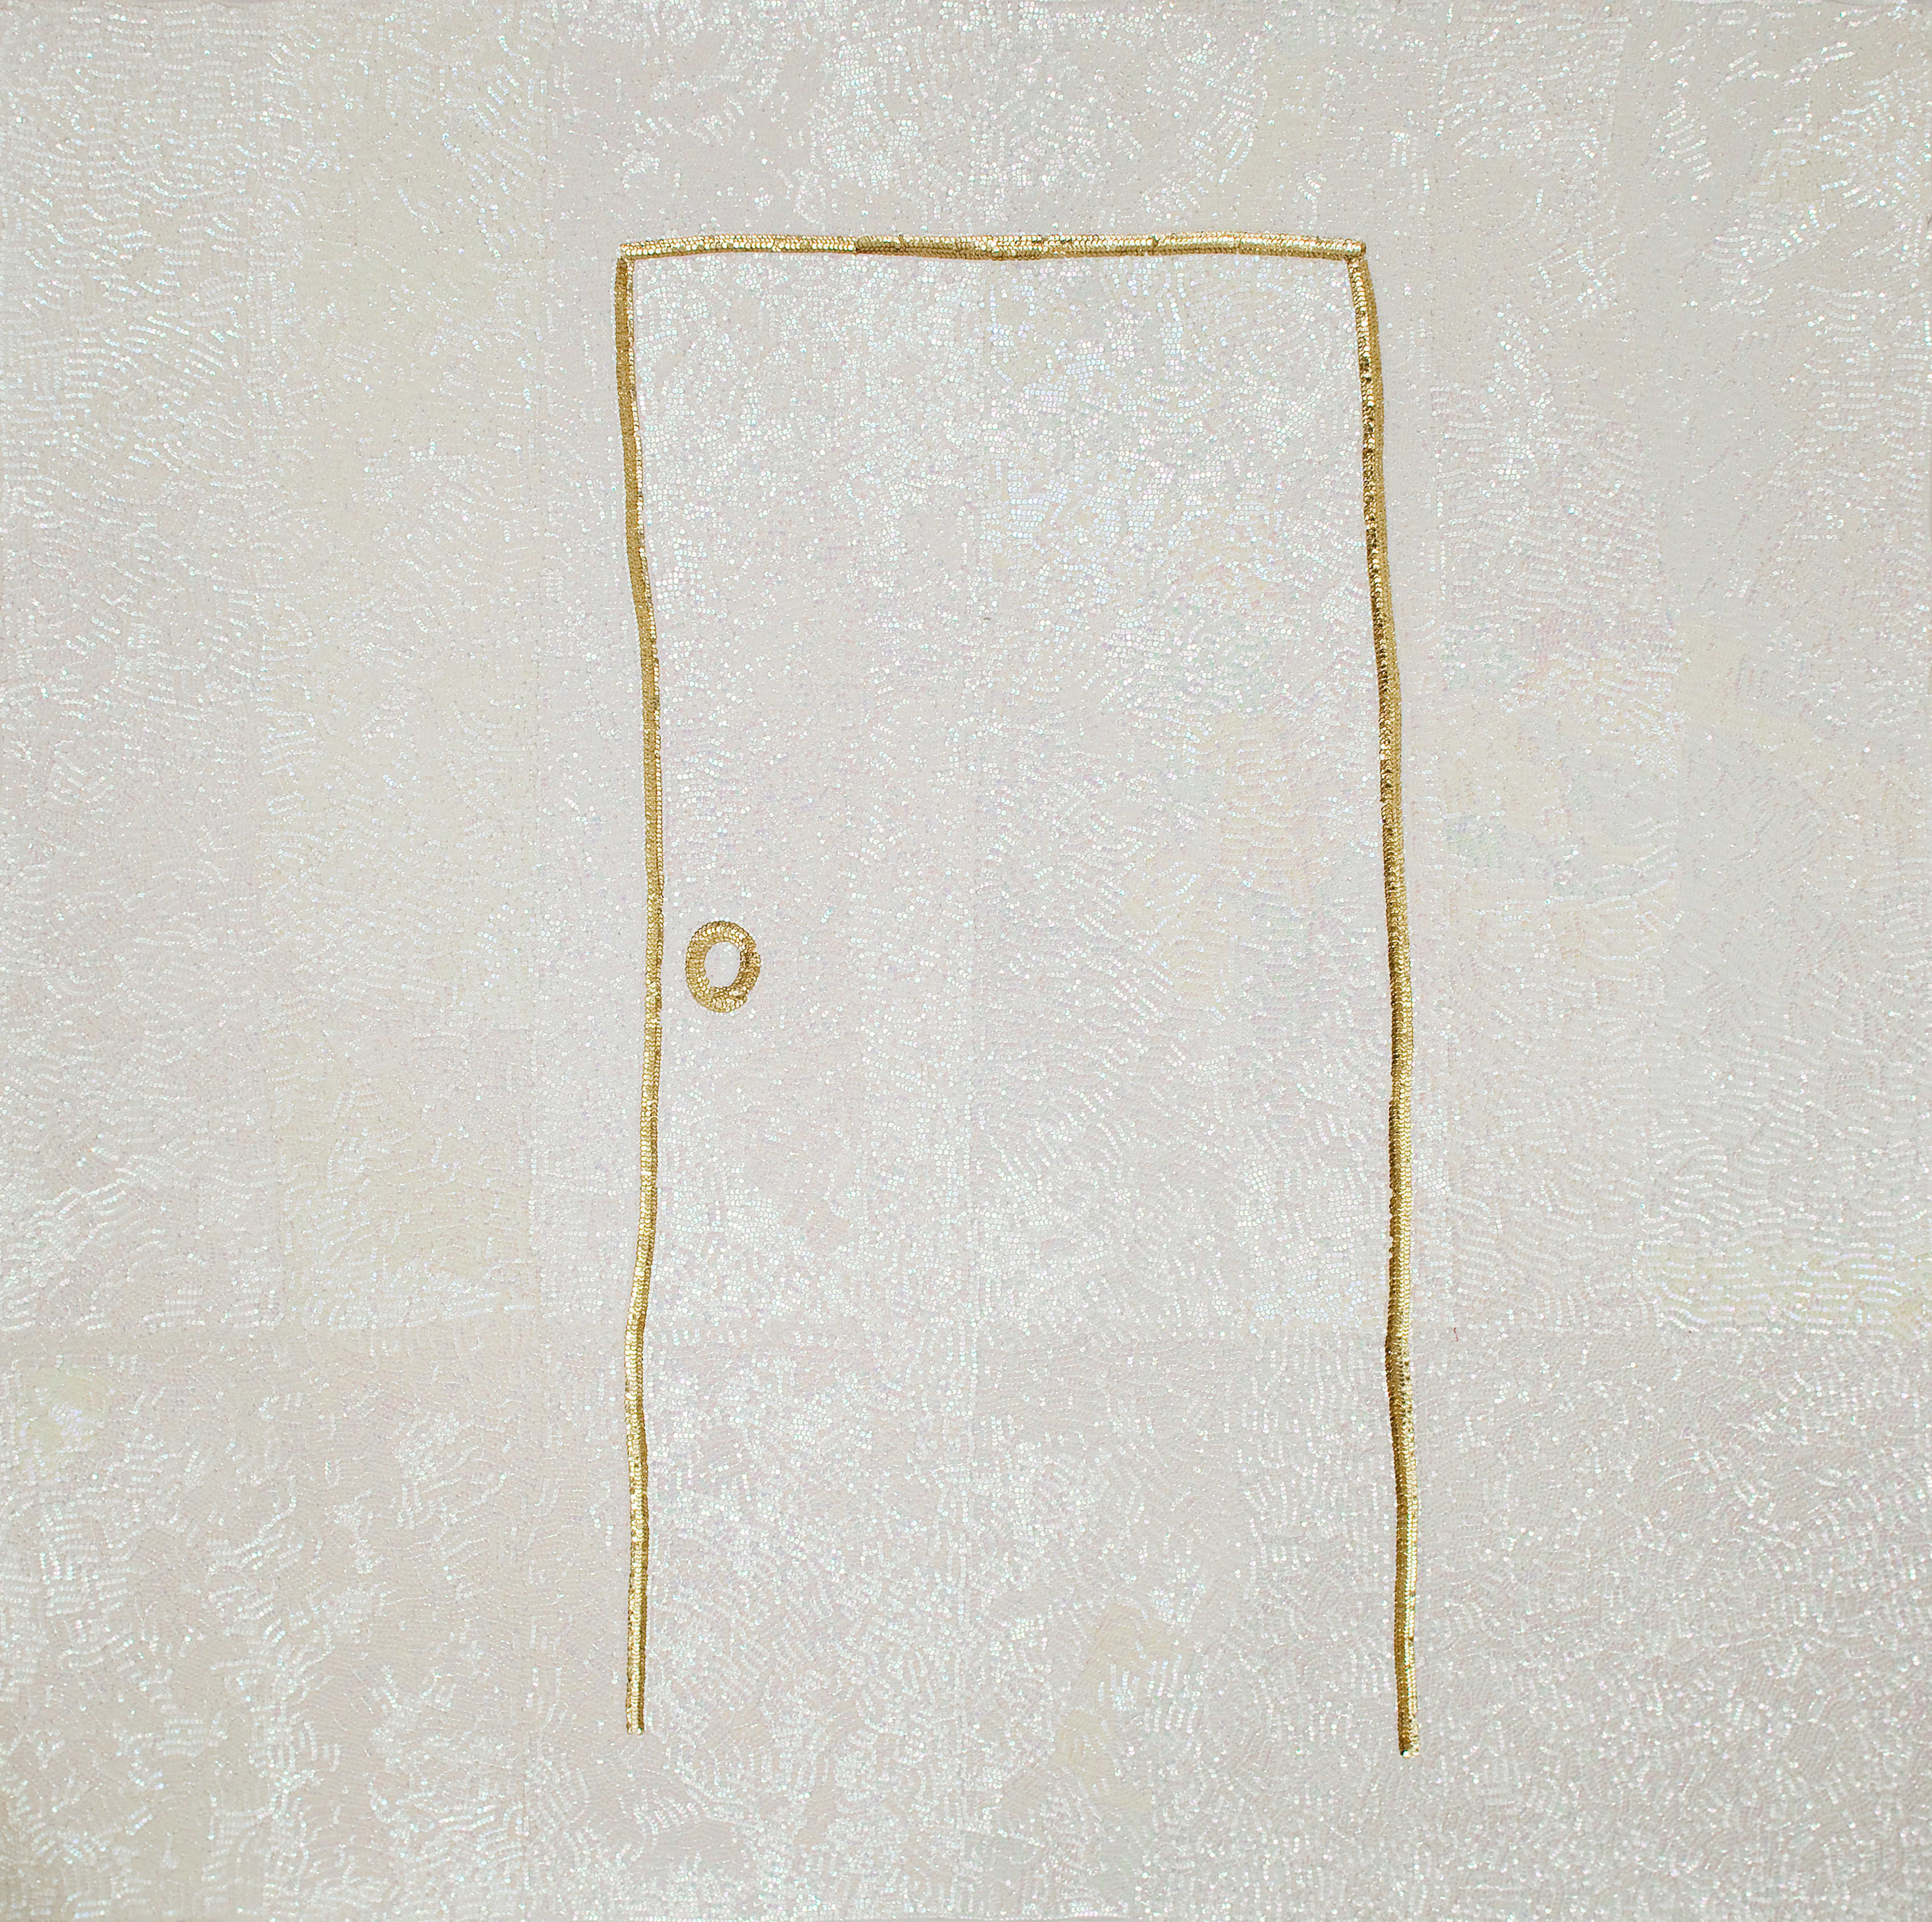 Daniel González, Escape Door after Guston, 2010, hand-sewn sequins on canvas, 190 x 190 cm